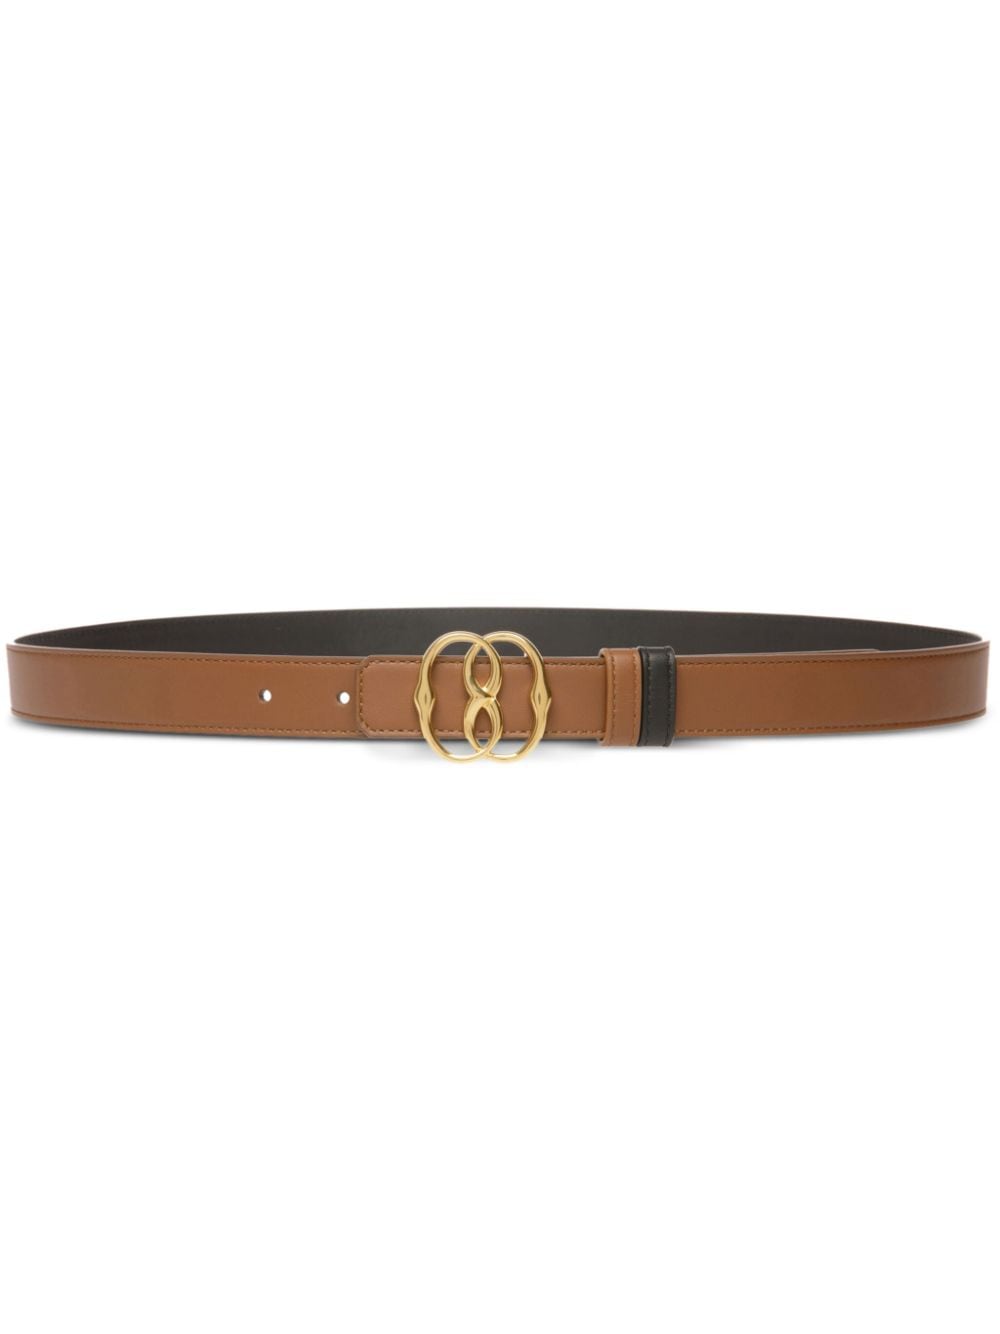 Shop Bally Emblem Leather Belt In Brown